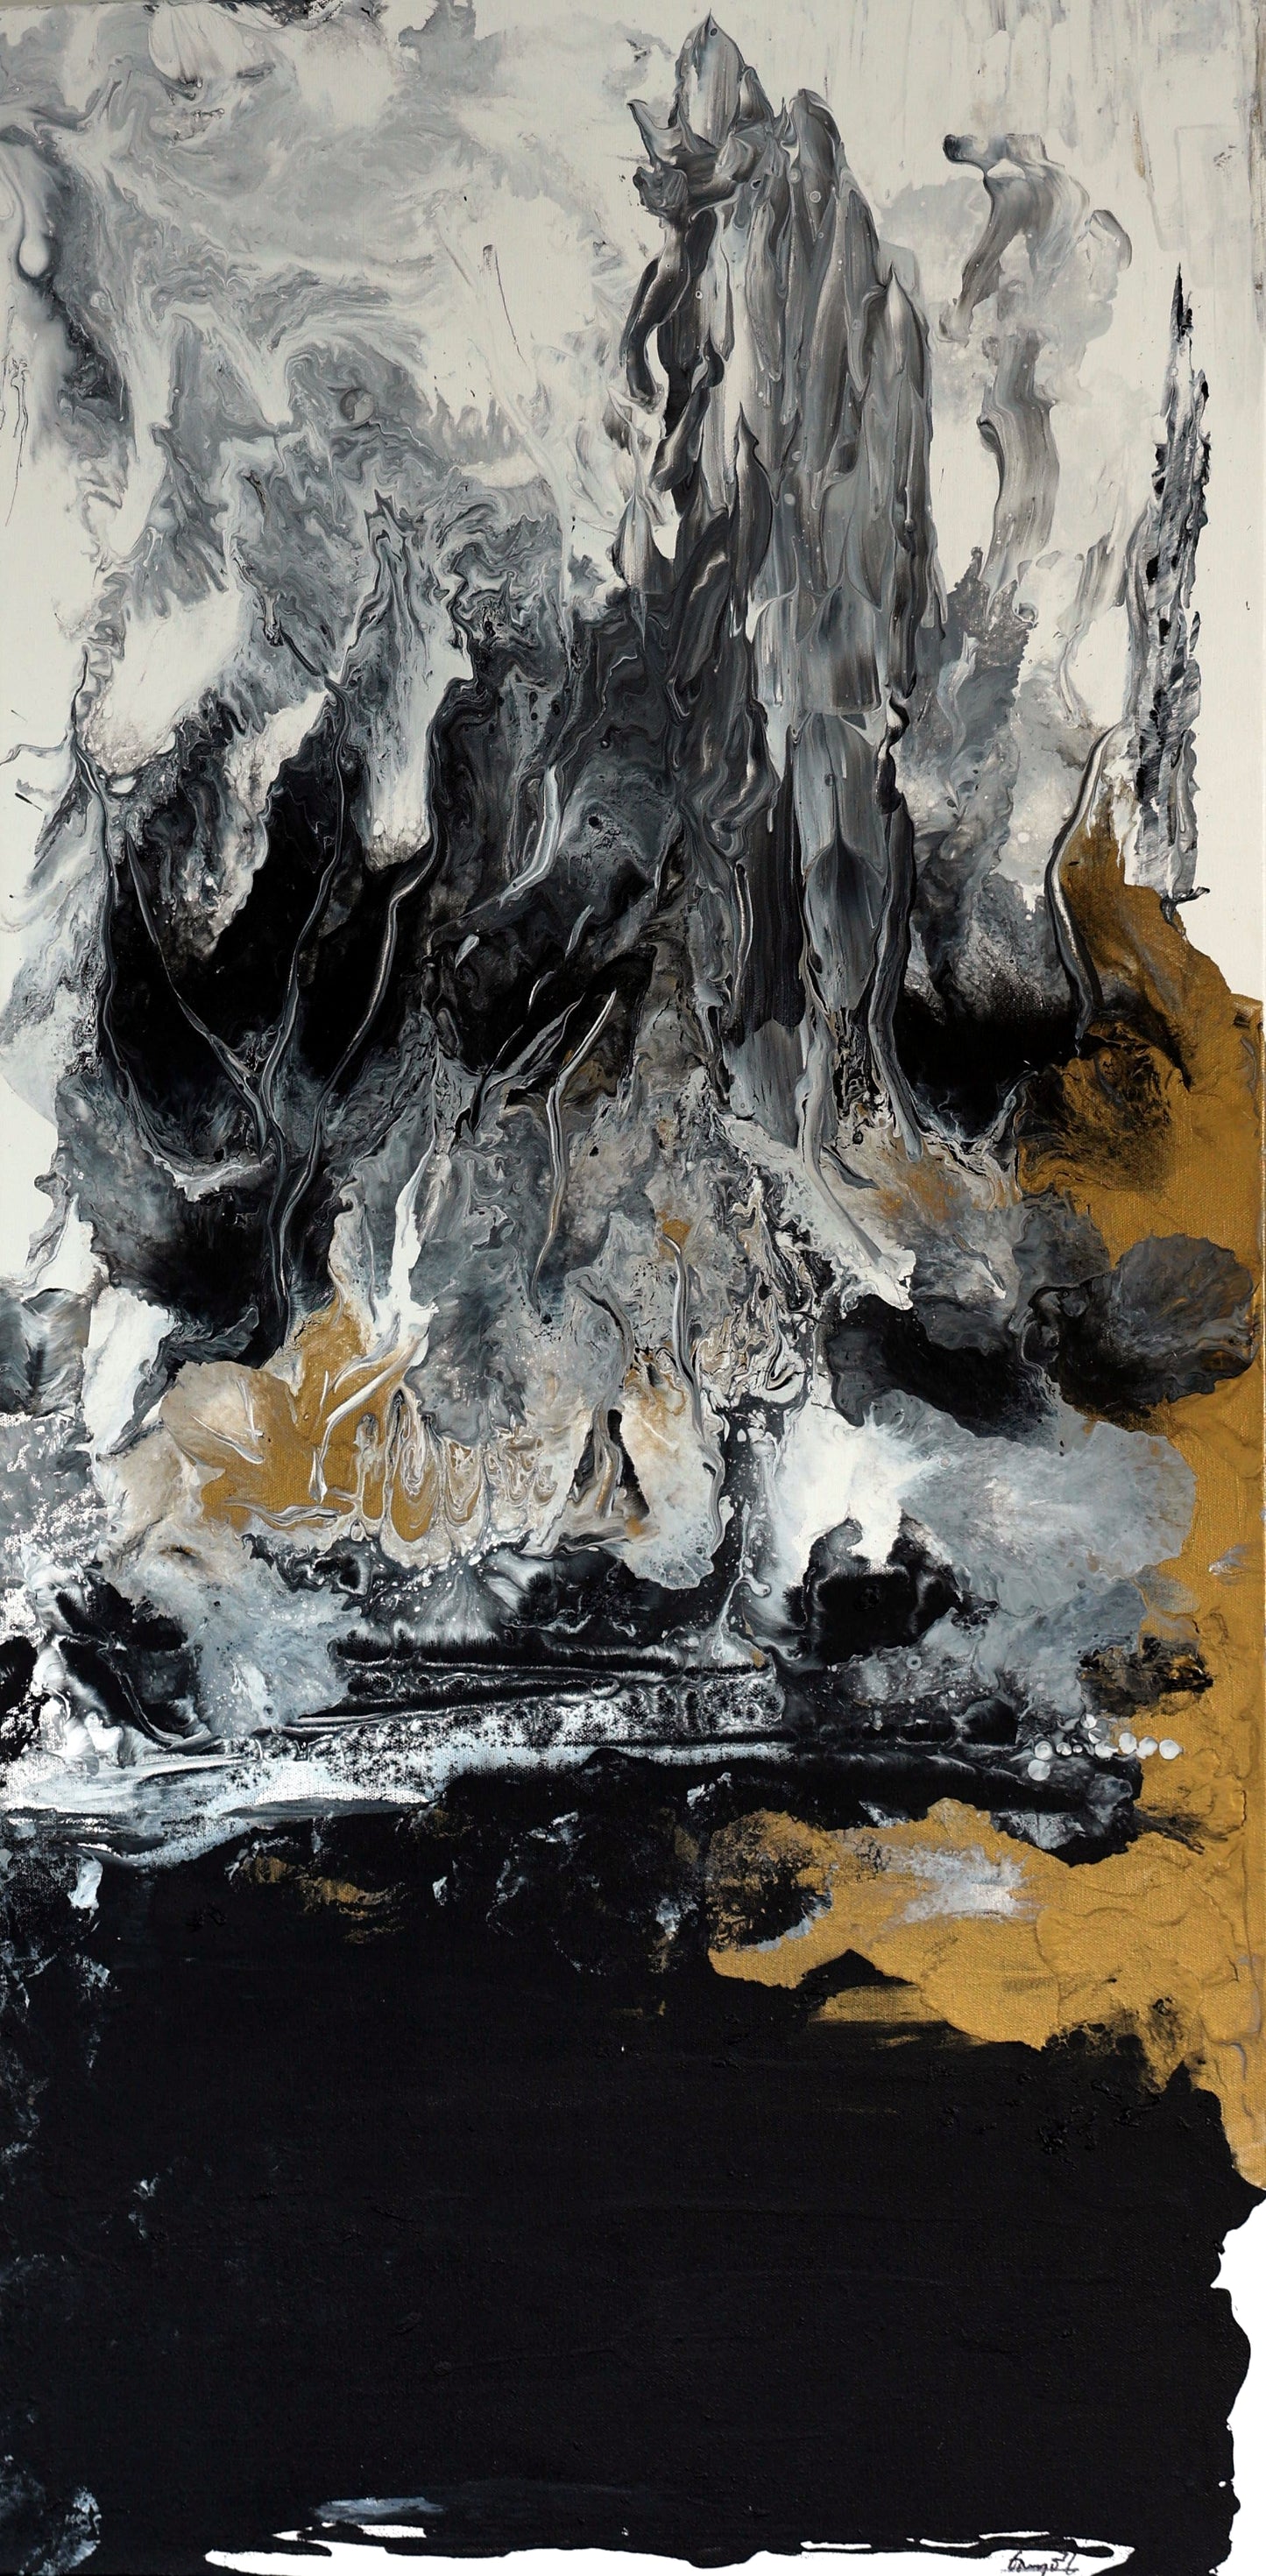 Fire N Ice. Acrylic on canvas. 48” x 24”.